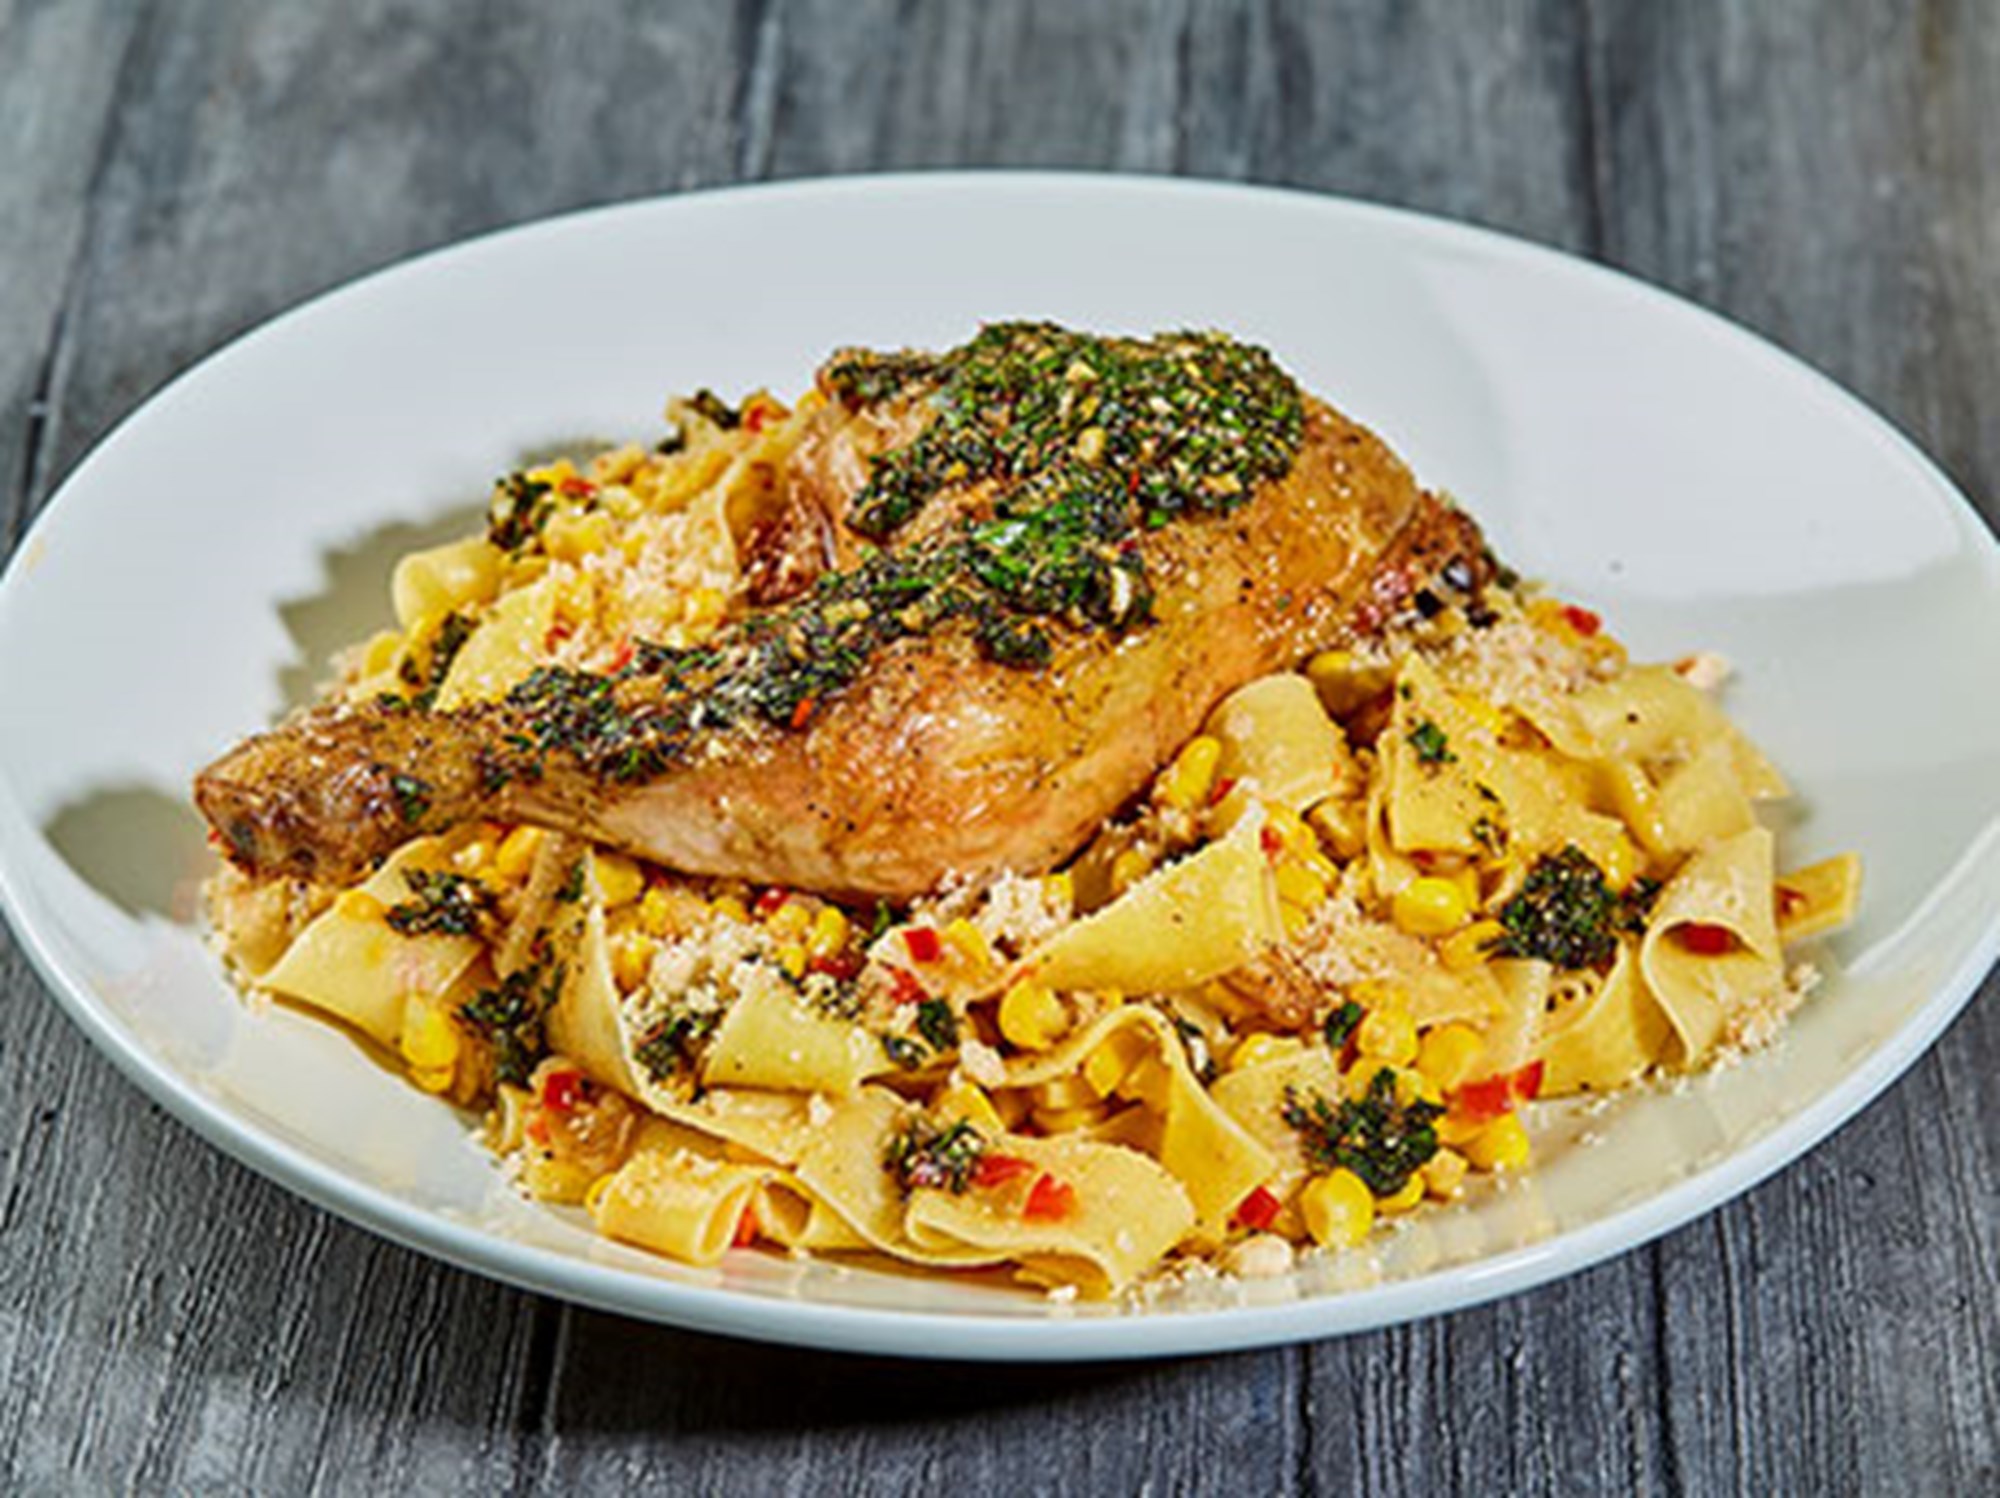 Kyllingelår med chimichurri, pasta, majs, tomat og hasselnødder